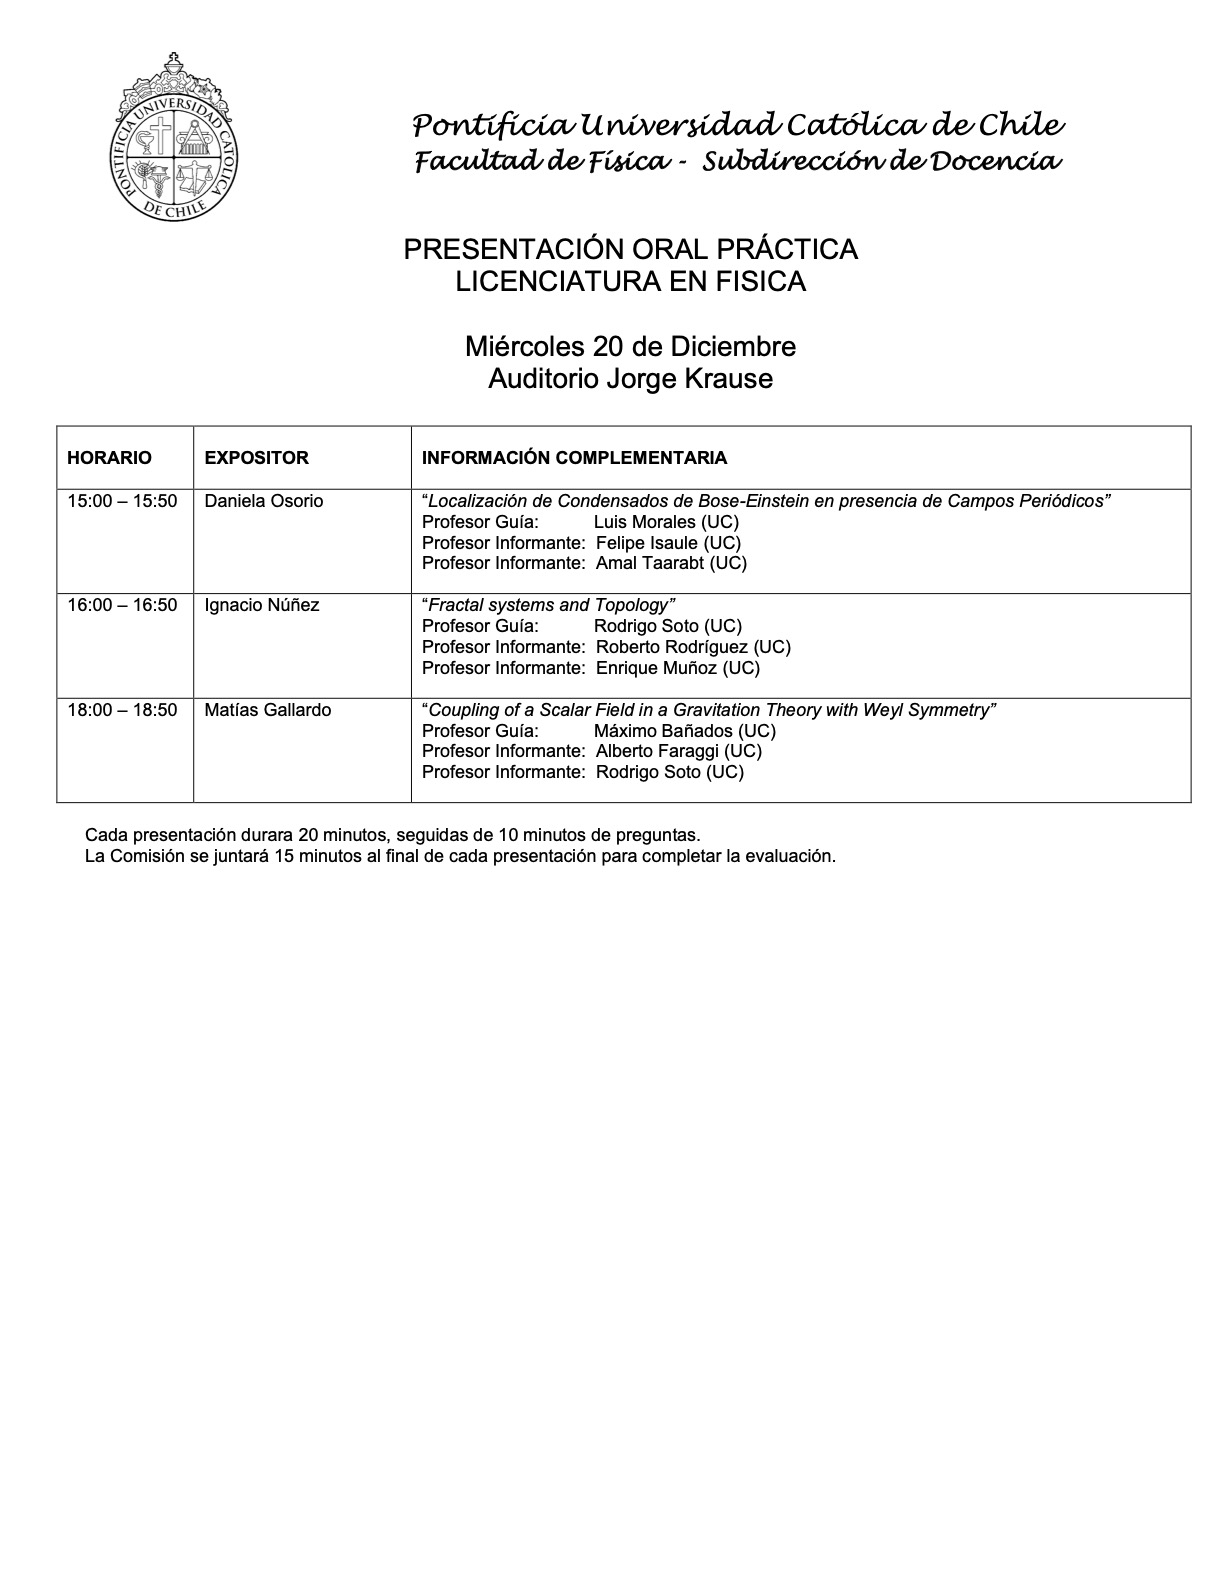 Presentaciones prácticas de Licenciatura en Física (20.12.23) 